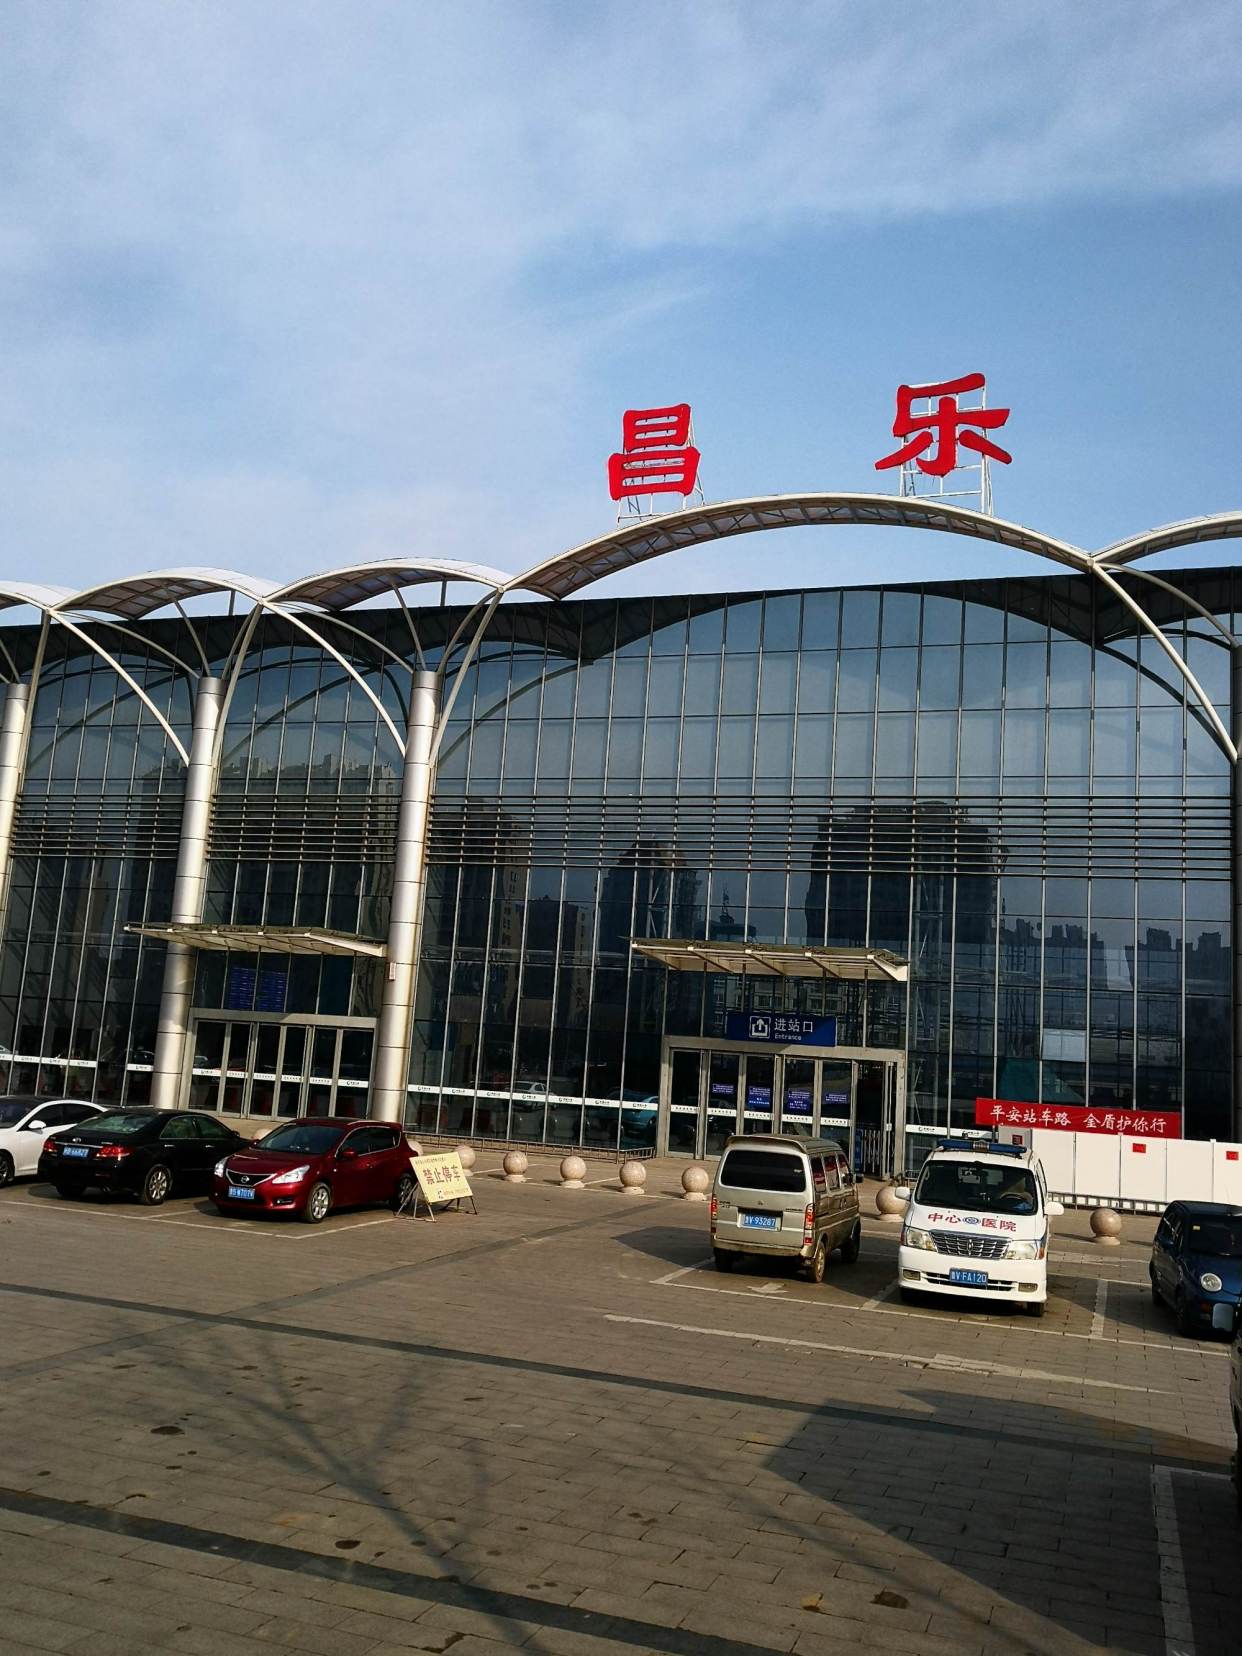 时隔多年,昌乐火车站再次有了普通列车:去济南可剩省下29块钱